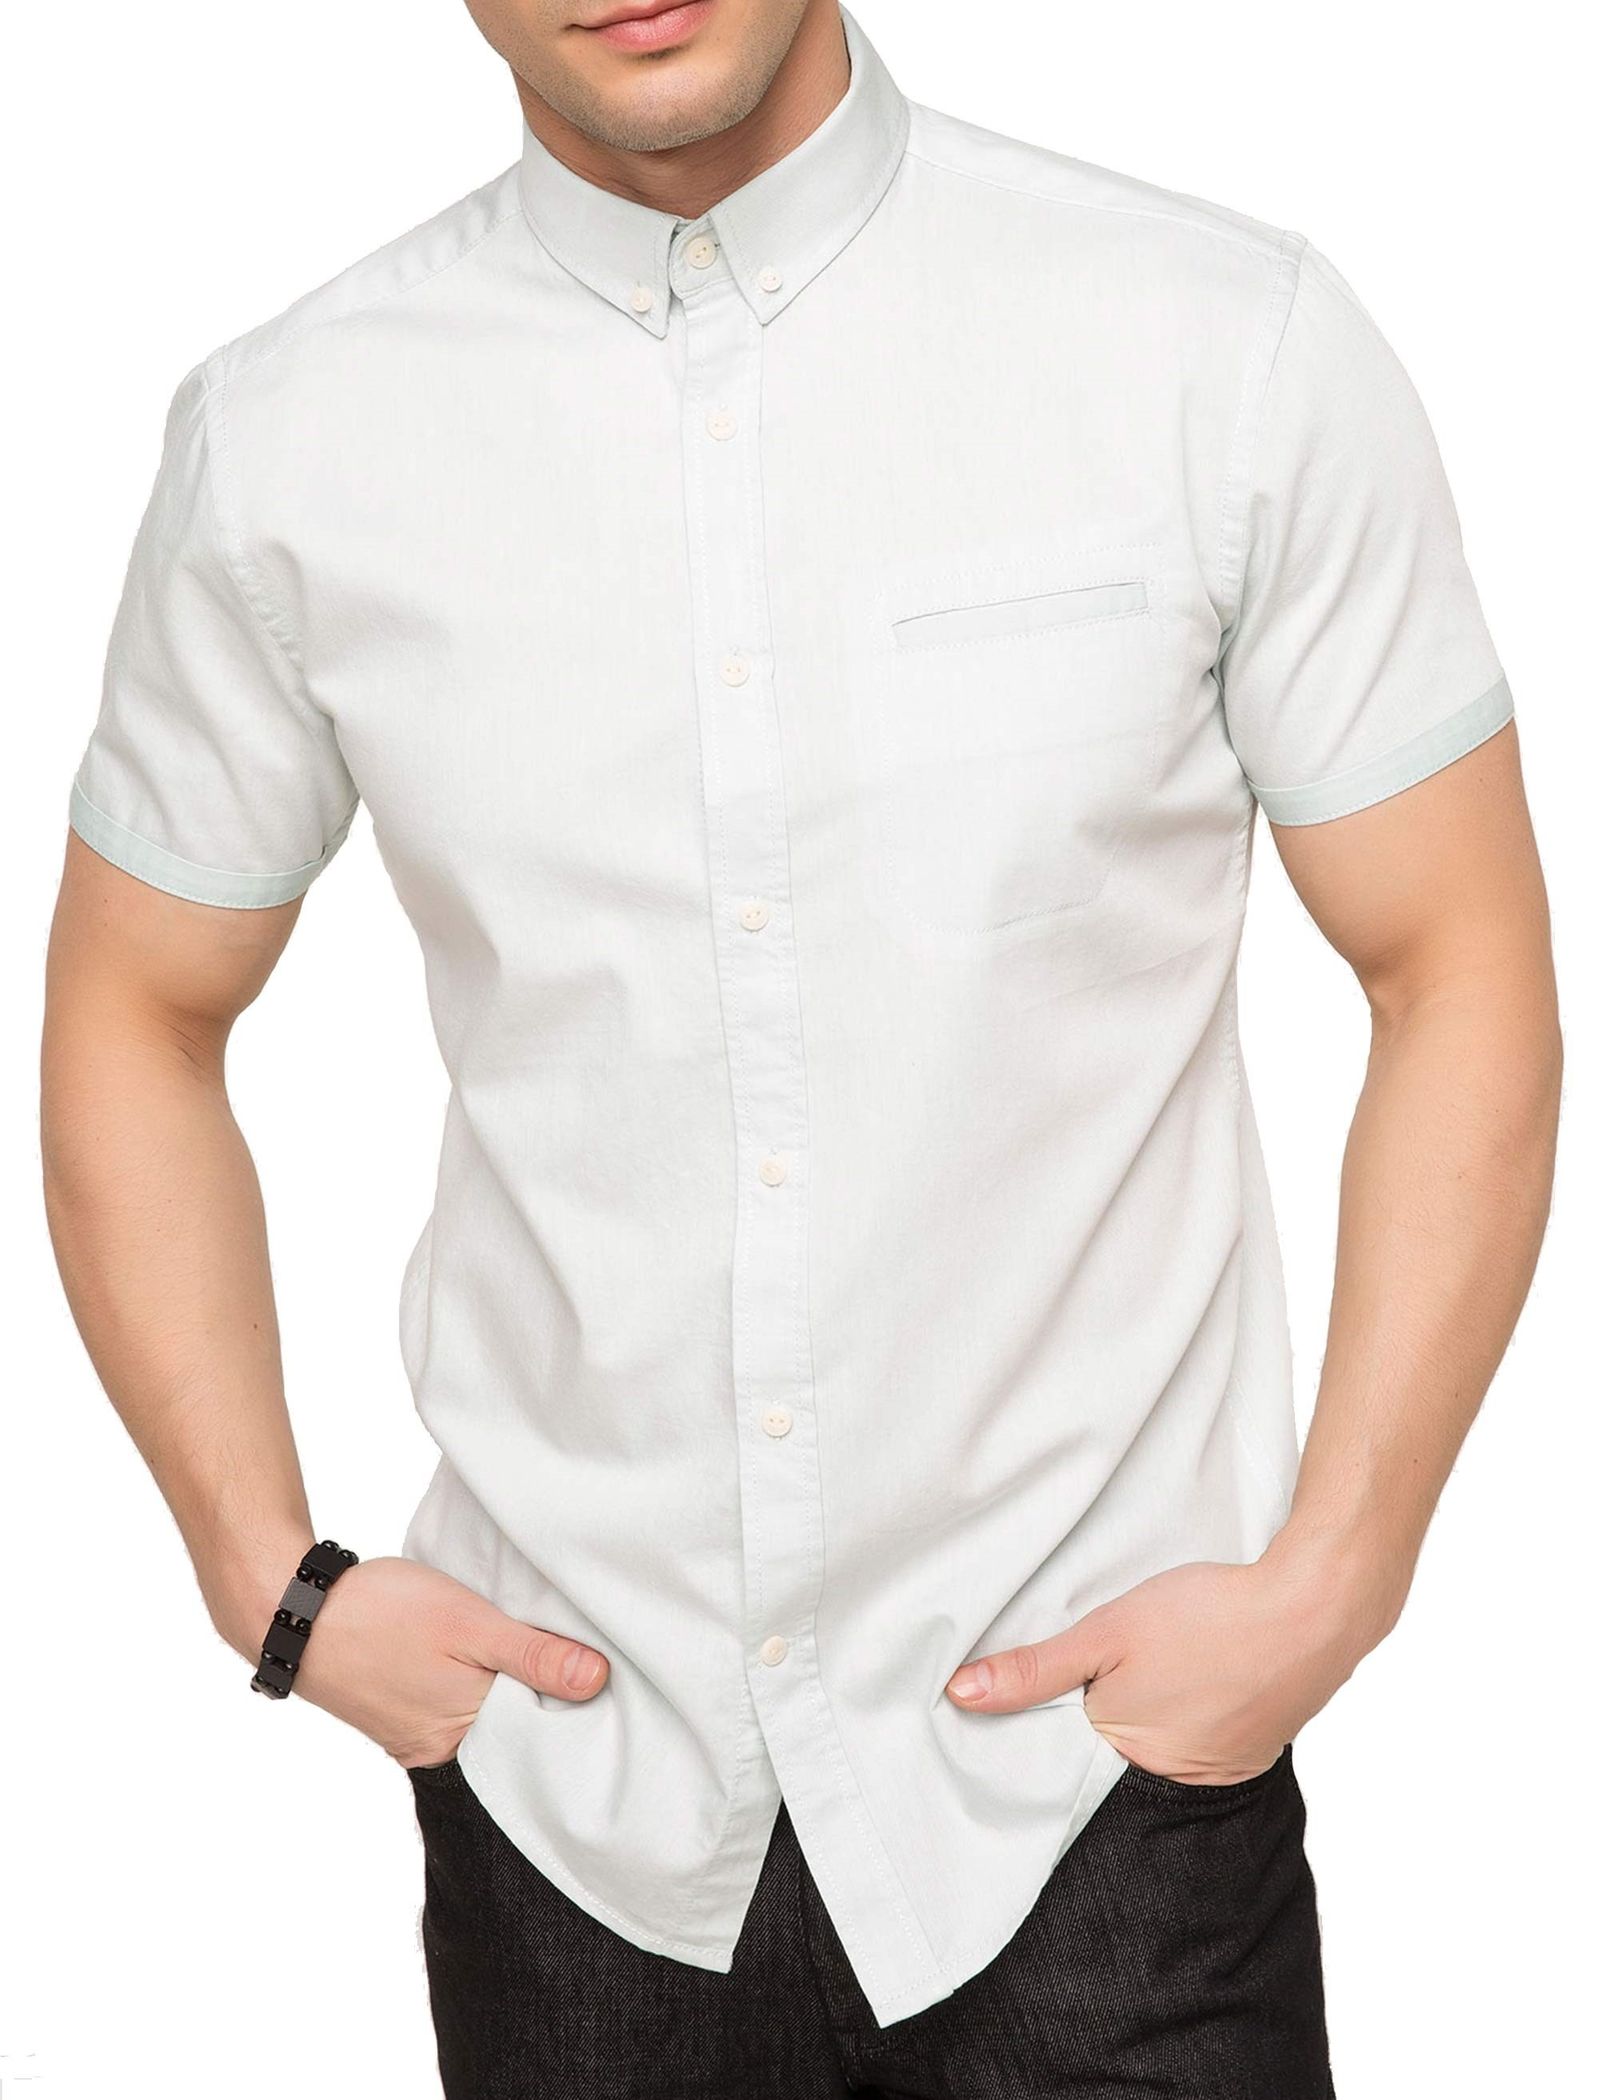 پیراهن نخی آستین کوتاه مردانه - دفکتو - مغز پسته اي روشن - 2